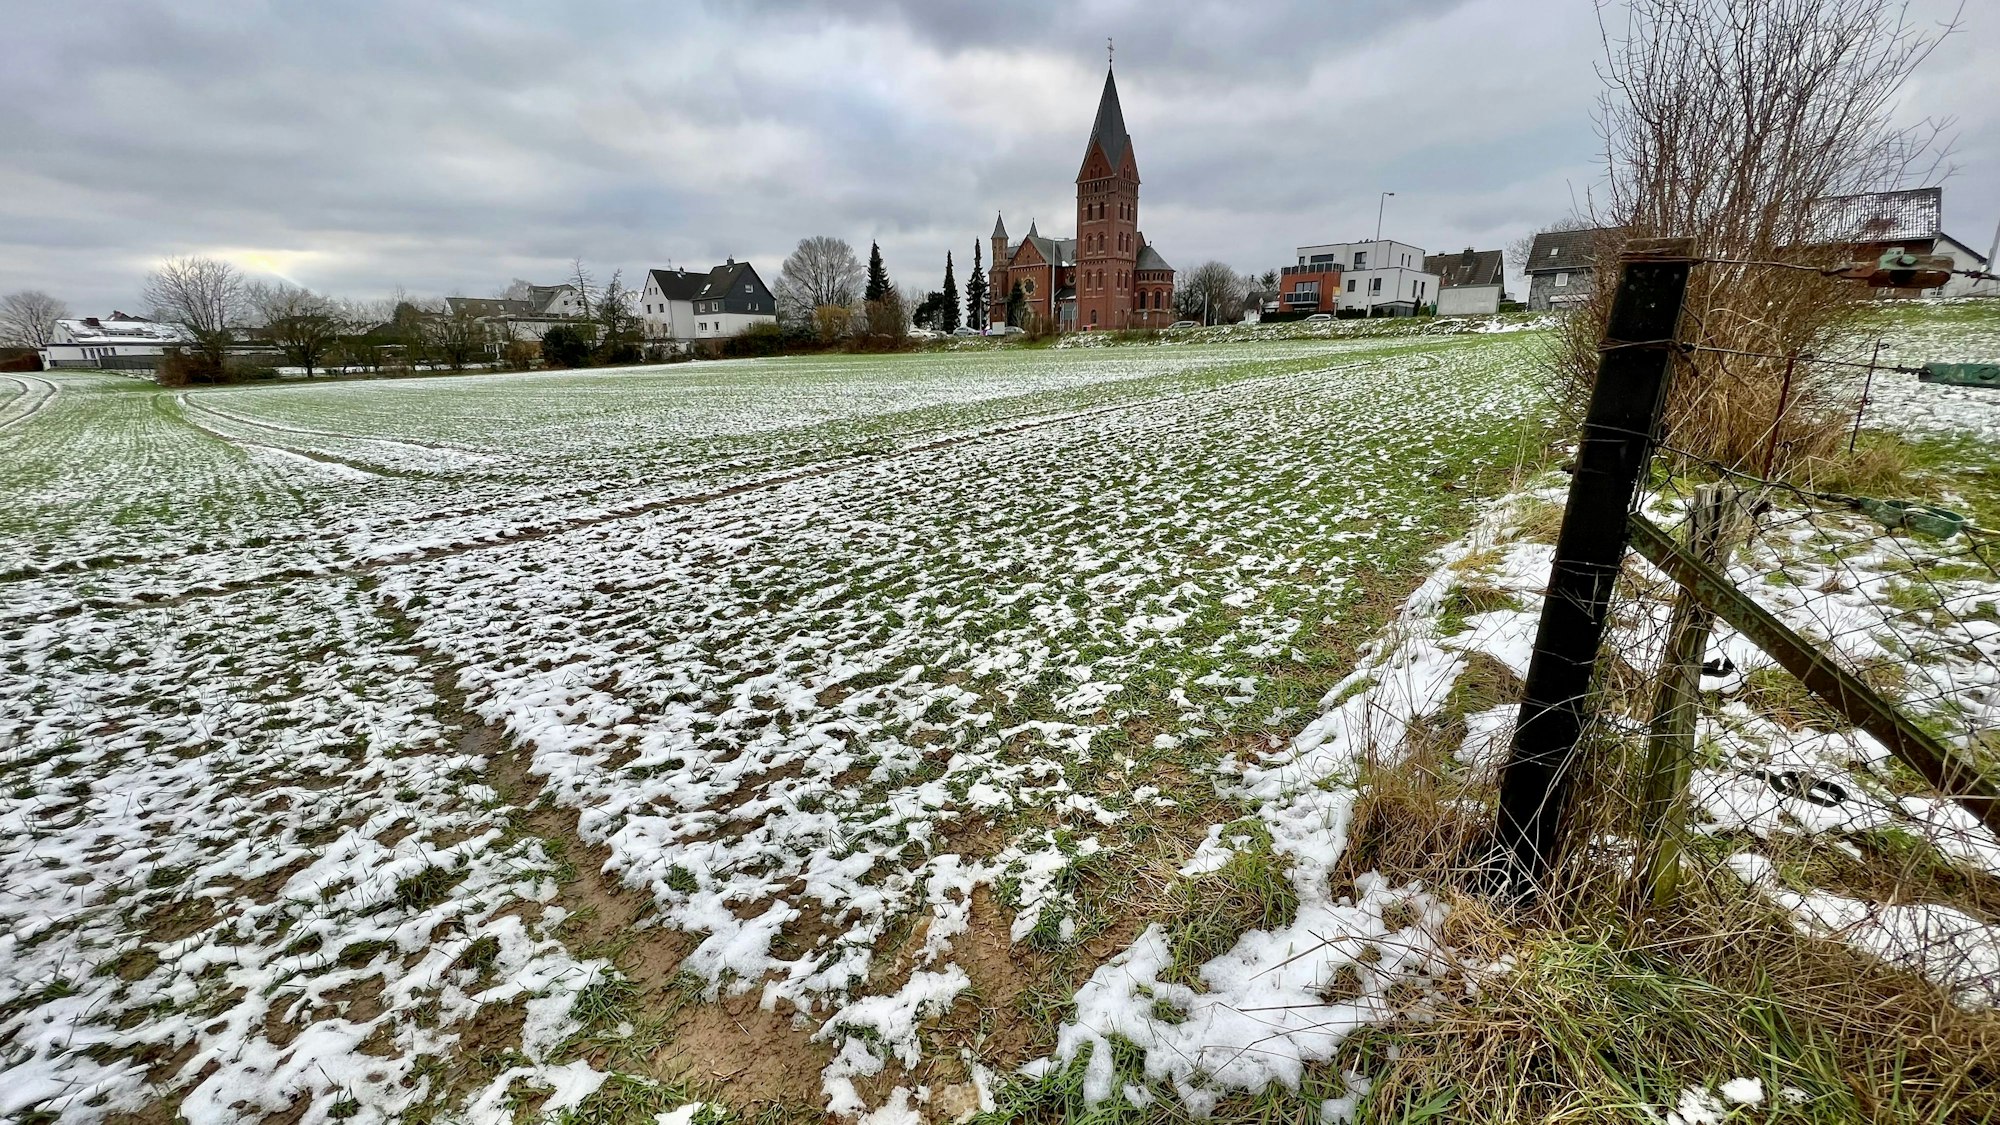 Feld mit etwas Schnee, im Hintergrund die Kirche von Neuboddenberg und Häuser